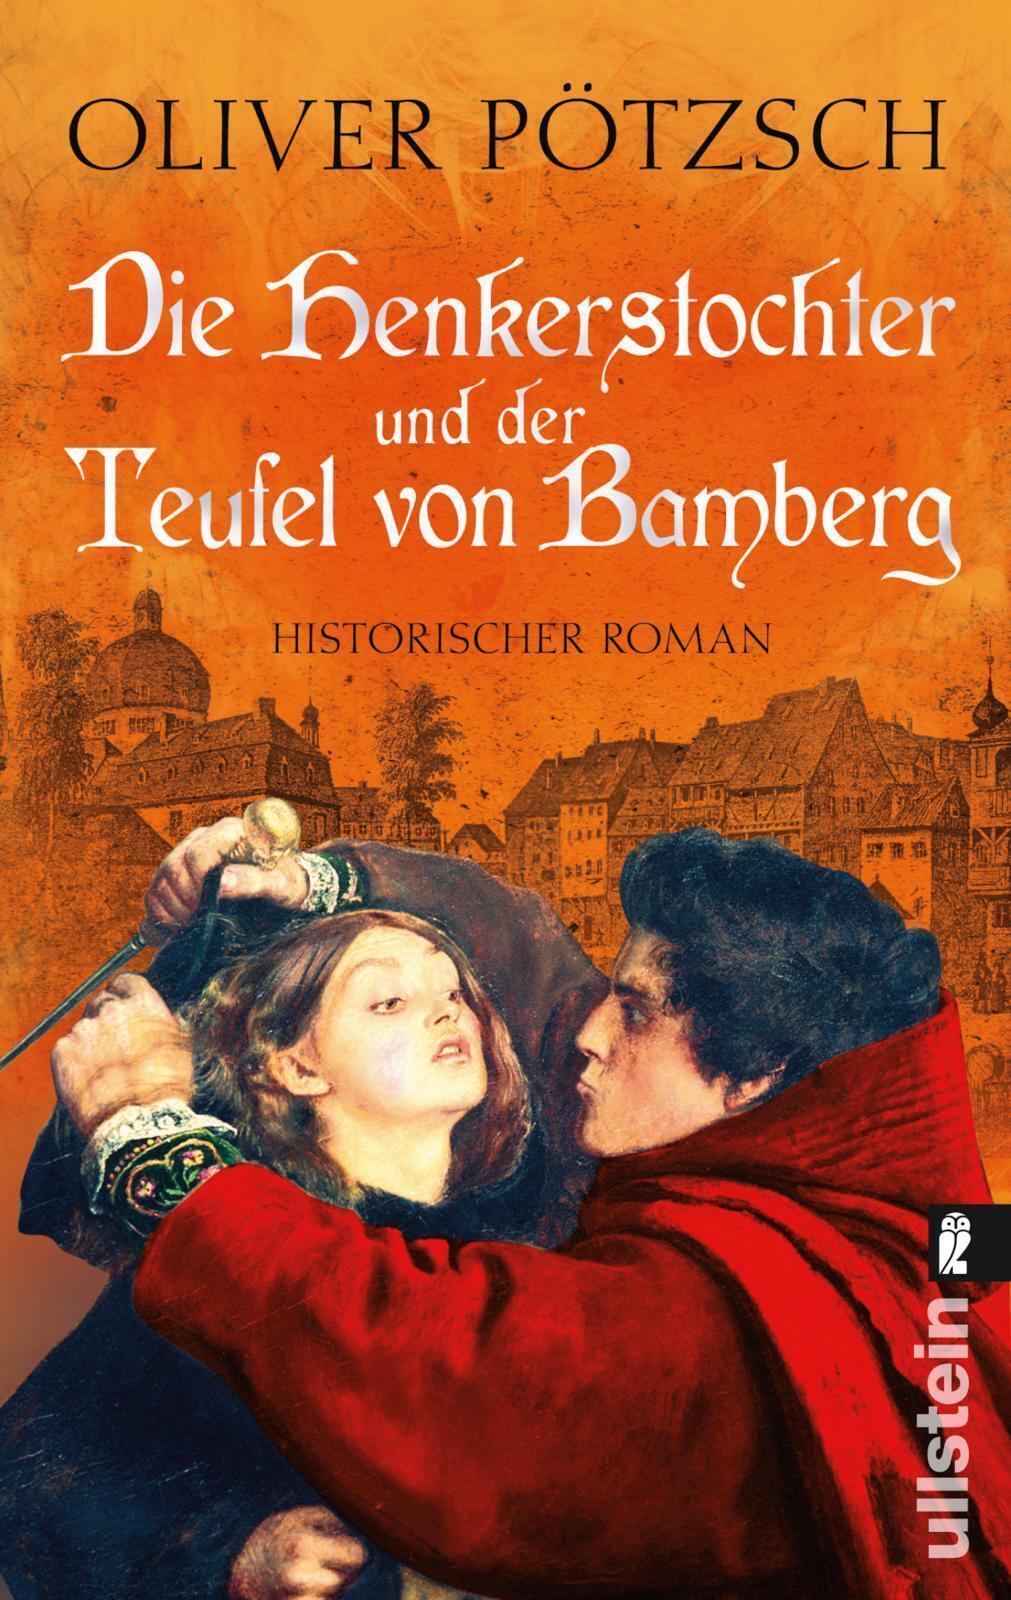 Die Henkerstochter und der Teufel von Bamberg Oliver Pötzsch Taschenbuch 715 S.